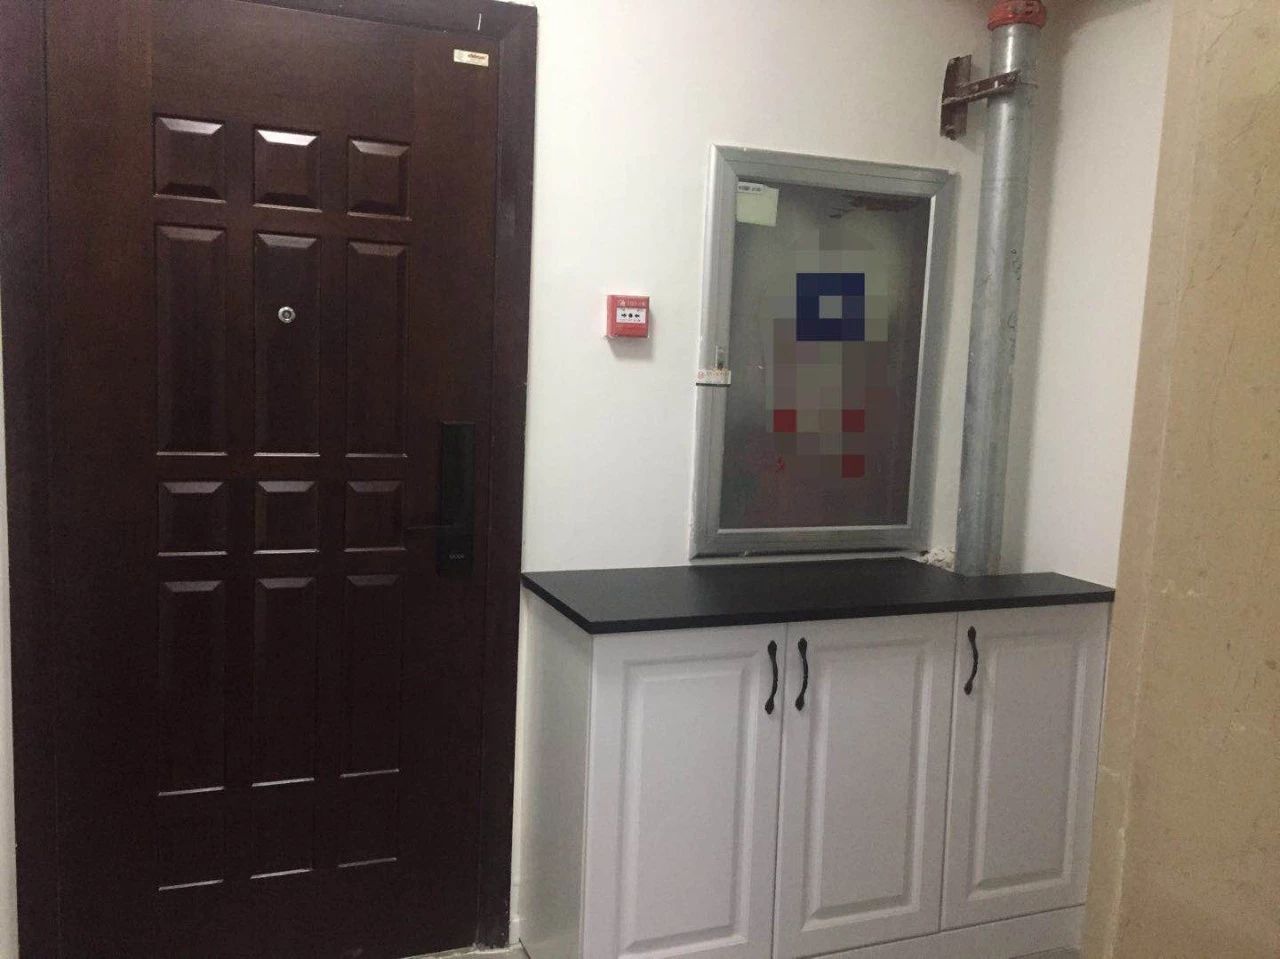 由于是电梯单独入户,所以整个电梯间位置充当了入户的玄关.